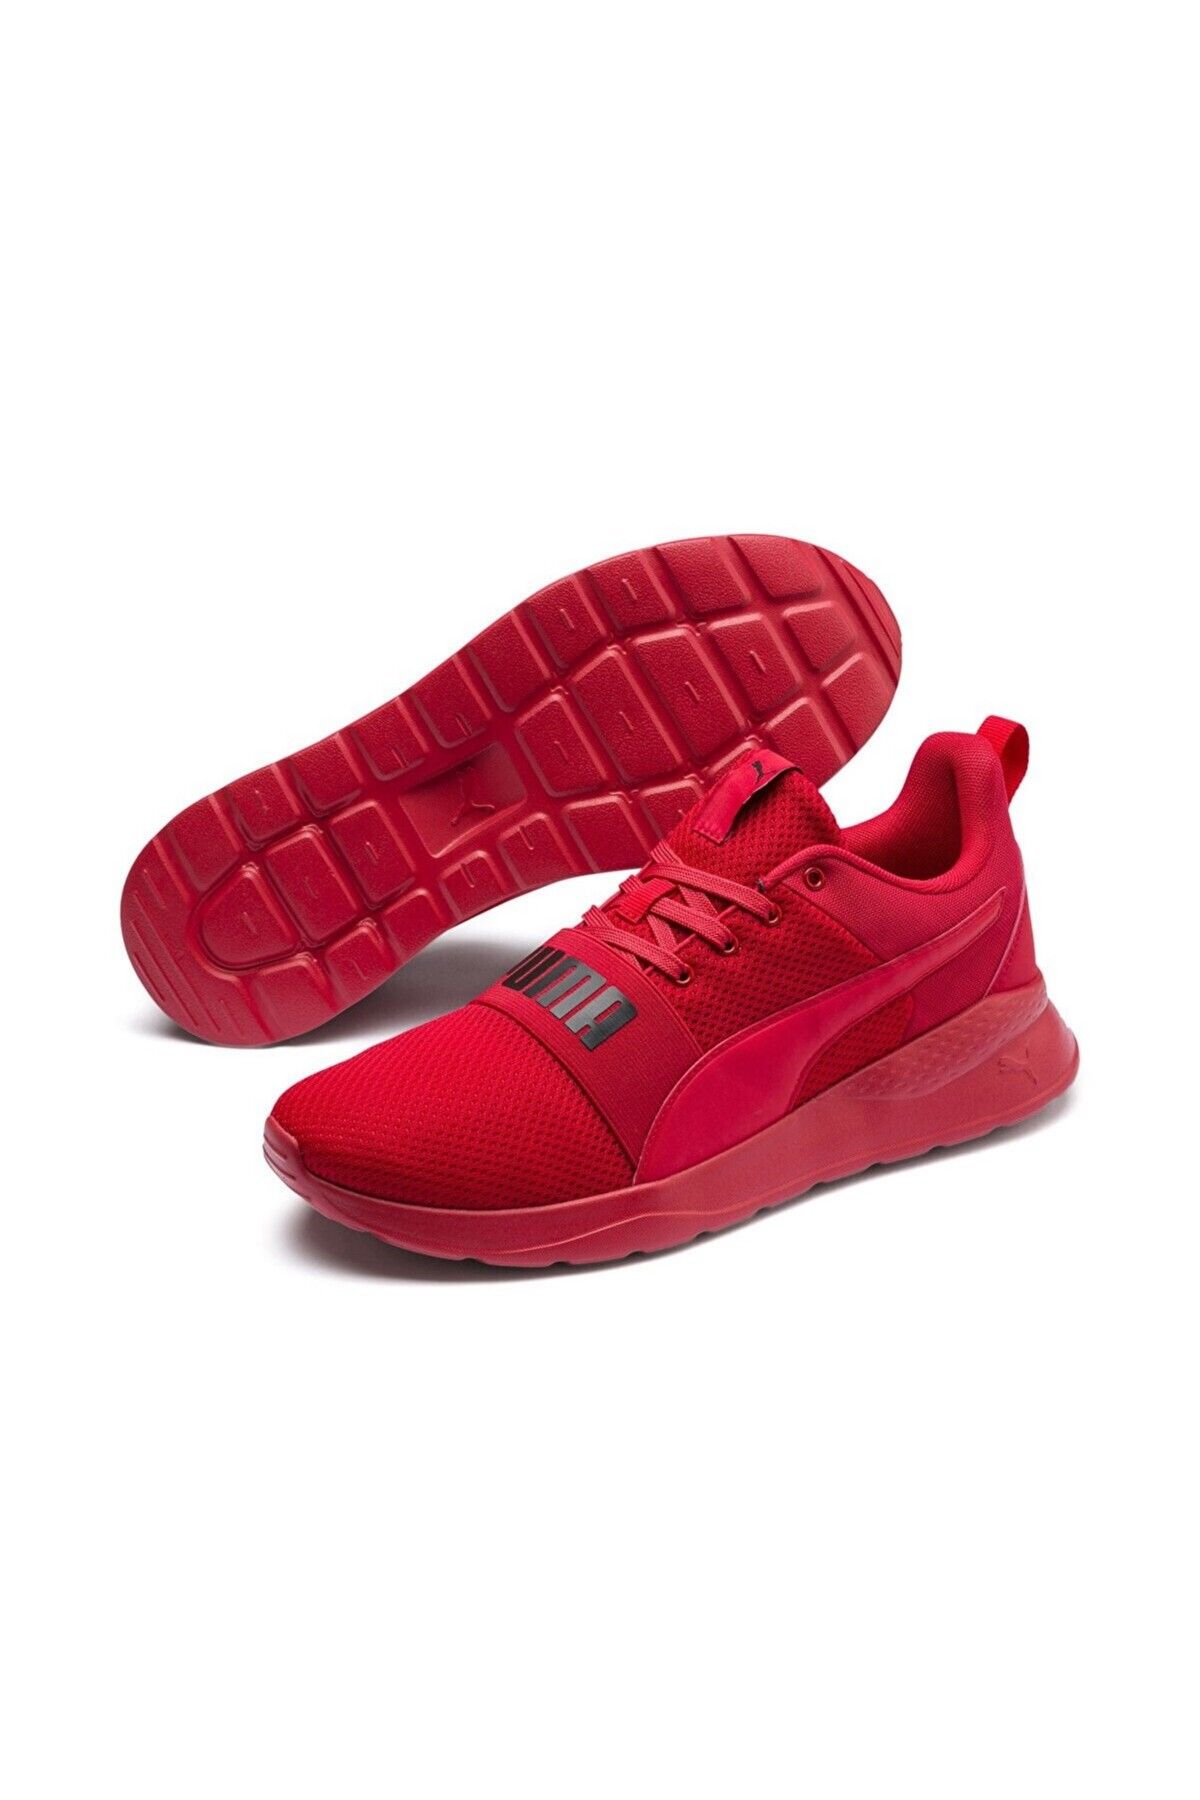 Puma Anzarun Lite Bold Unisex Kırmızı Spor Ayakkabı372362-04